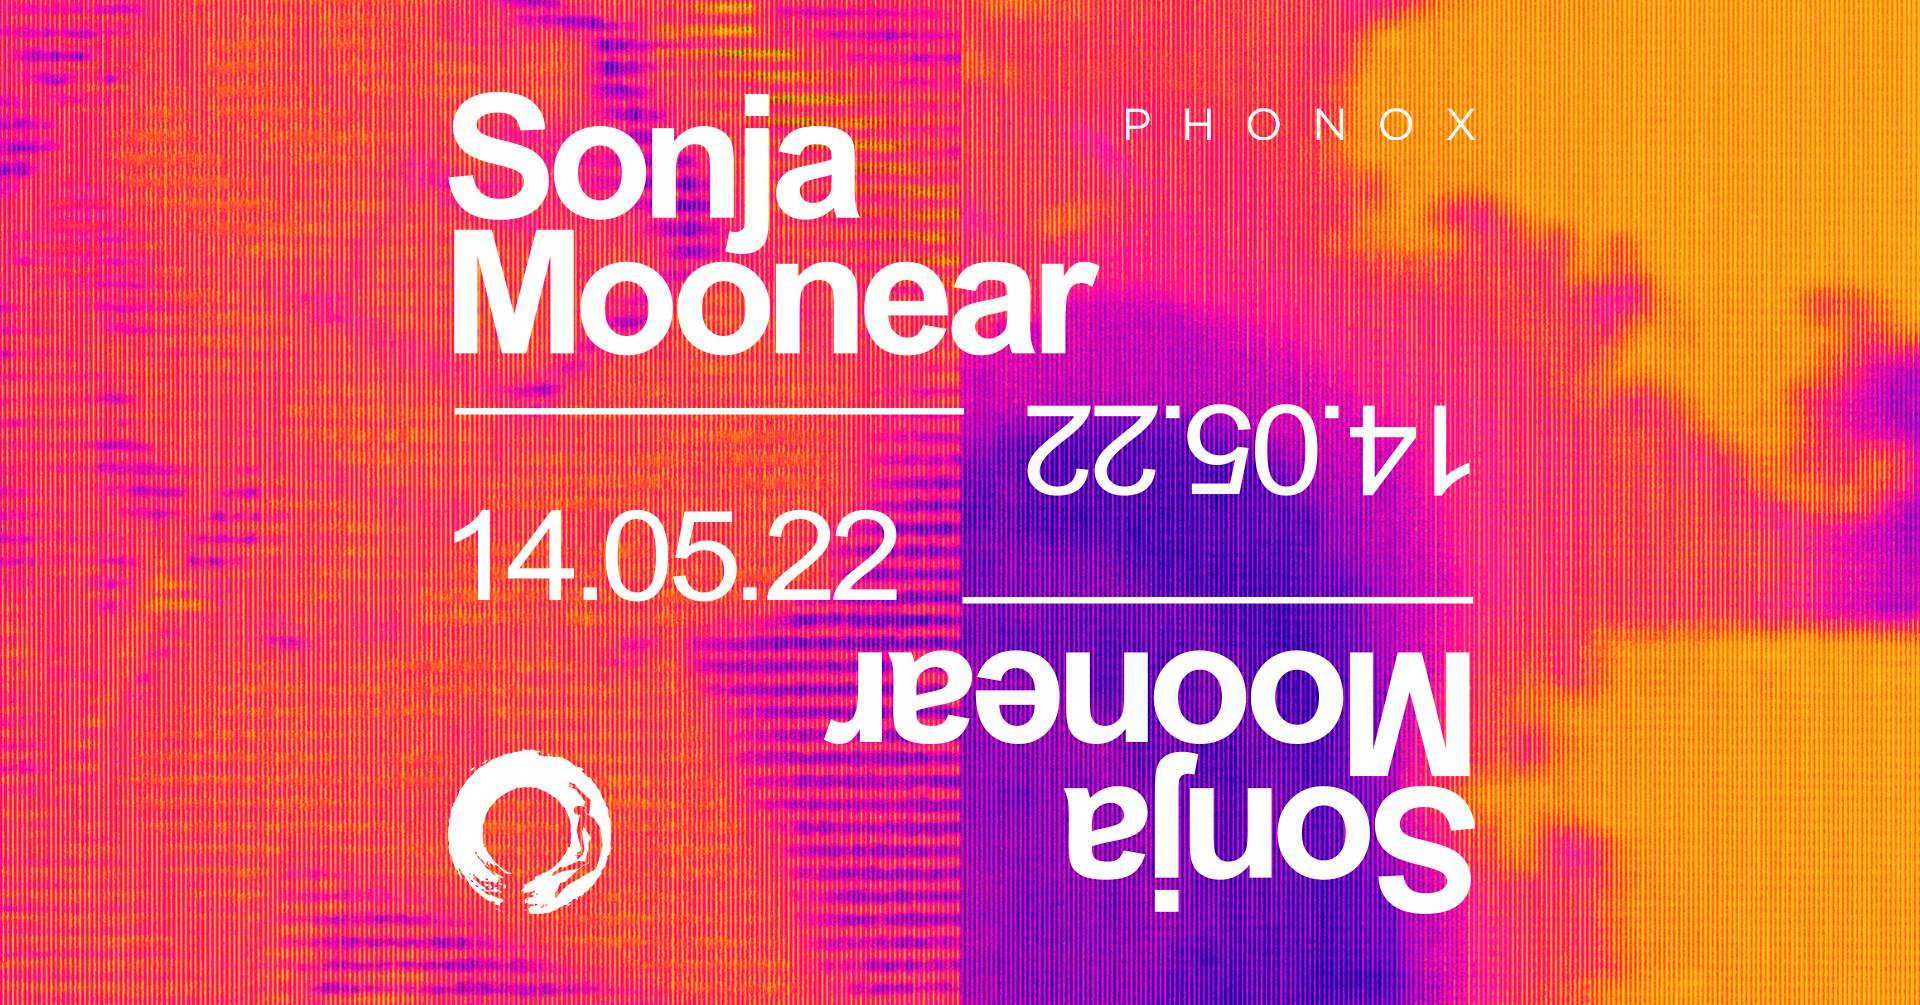 SOLIS: Sonja Moonear - Página frontal